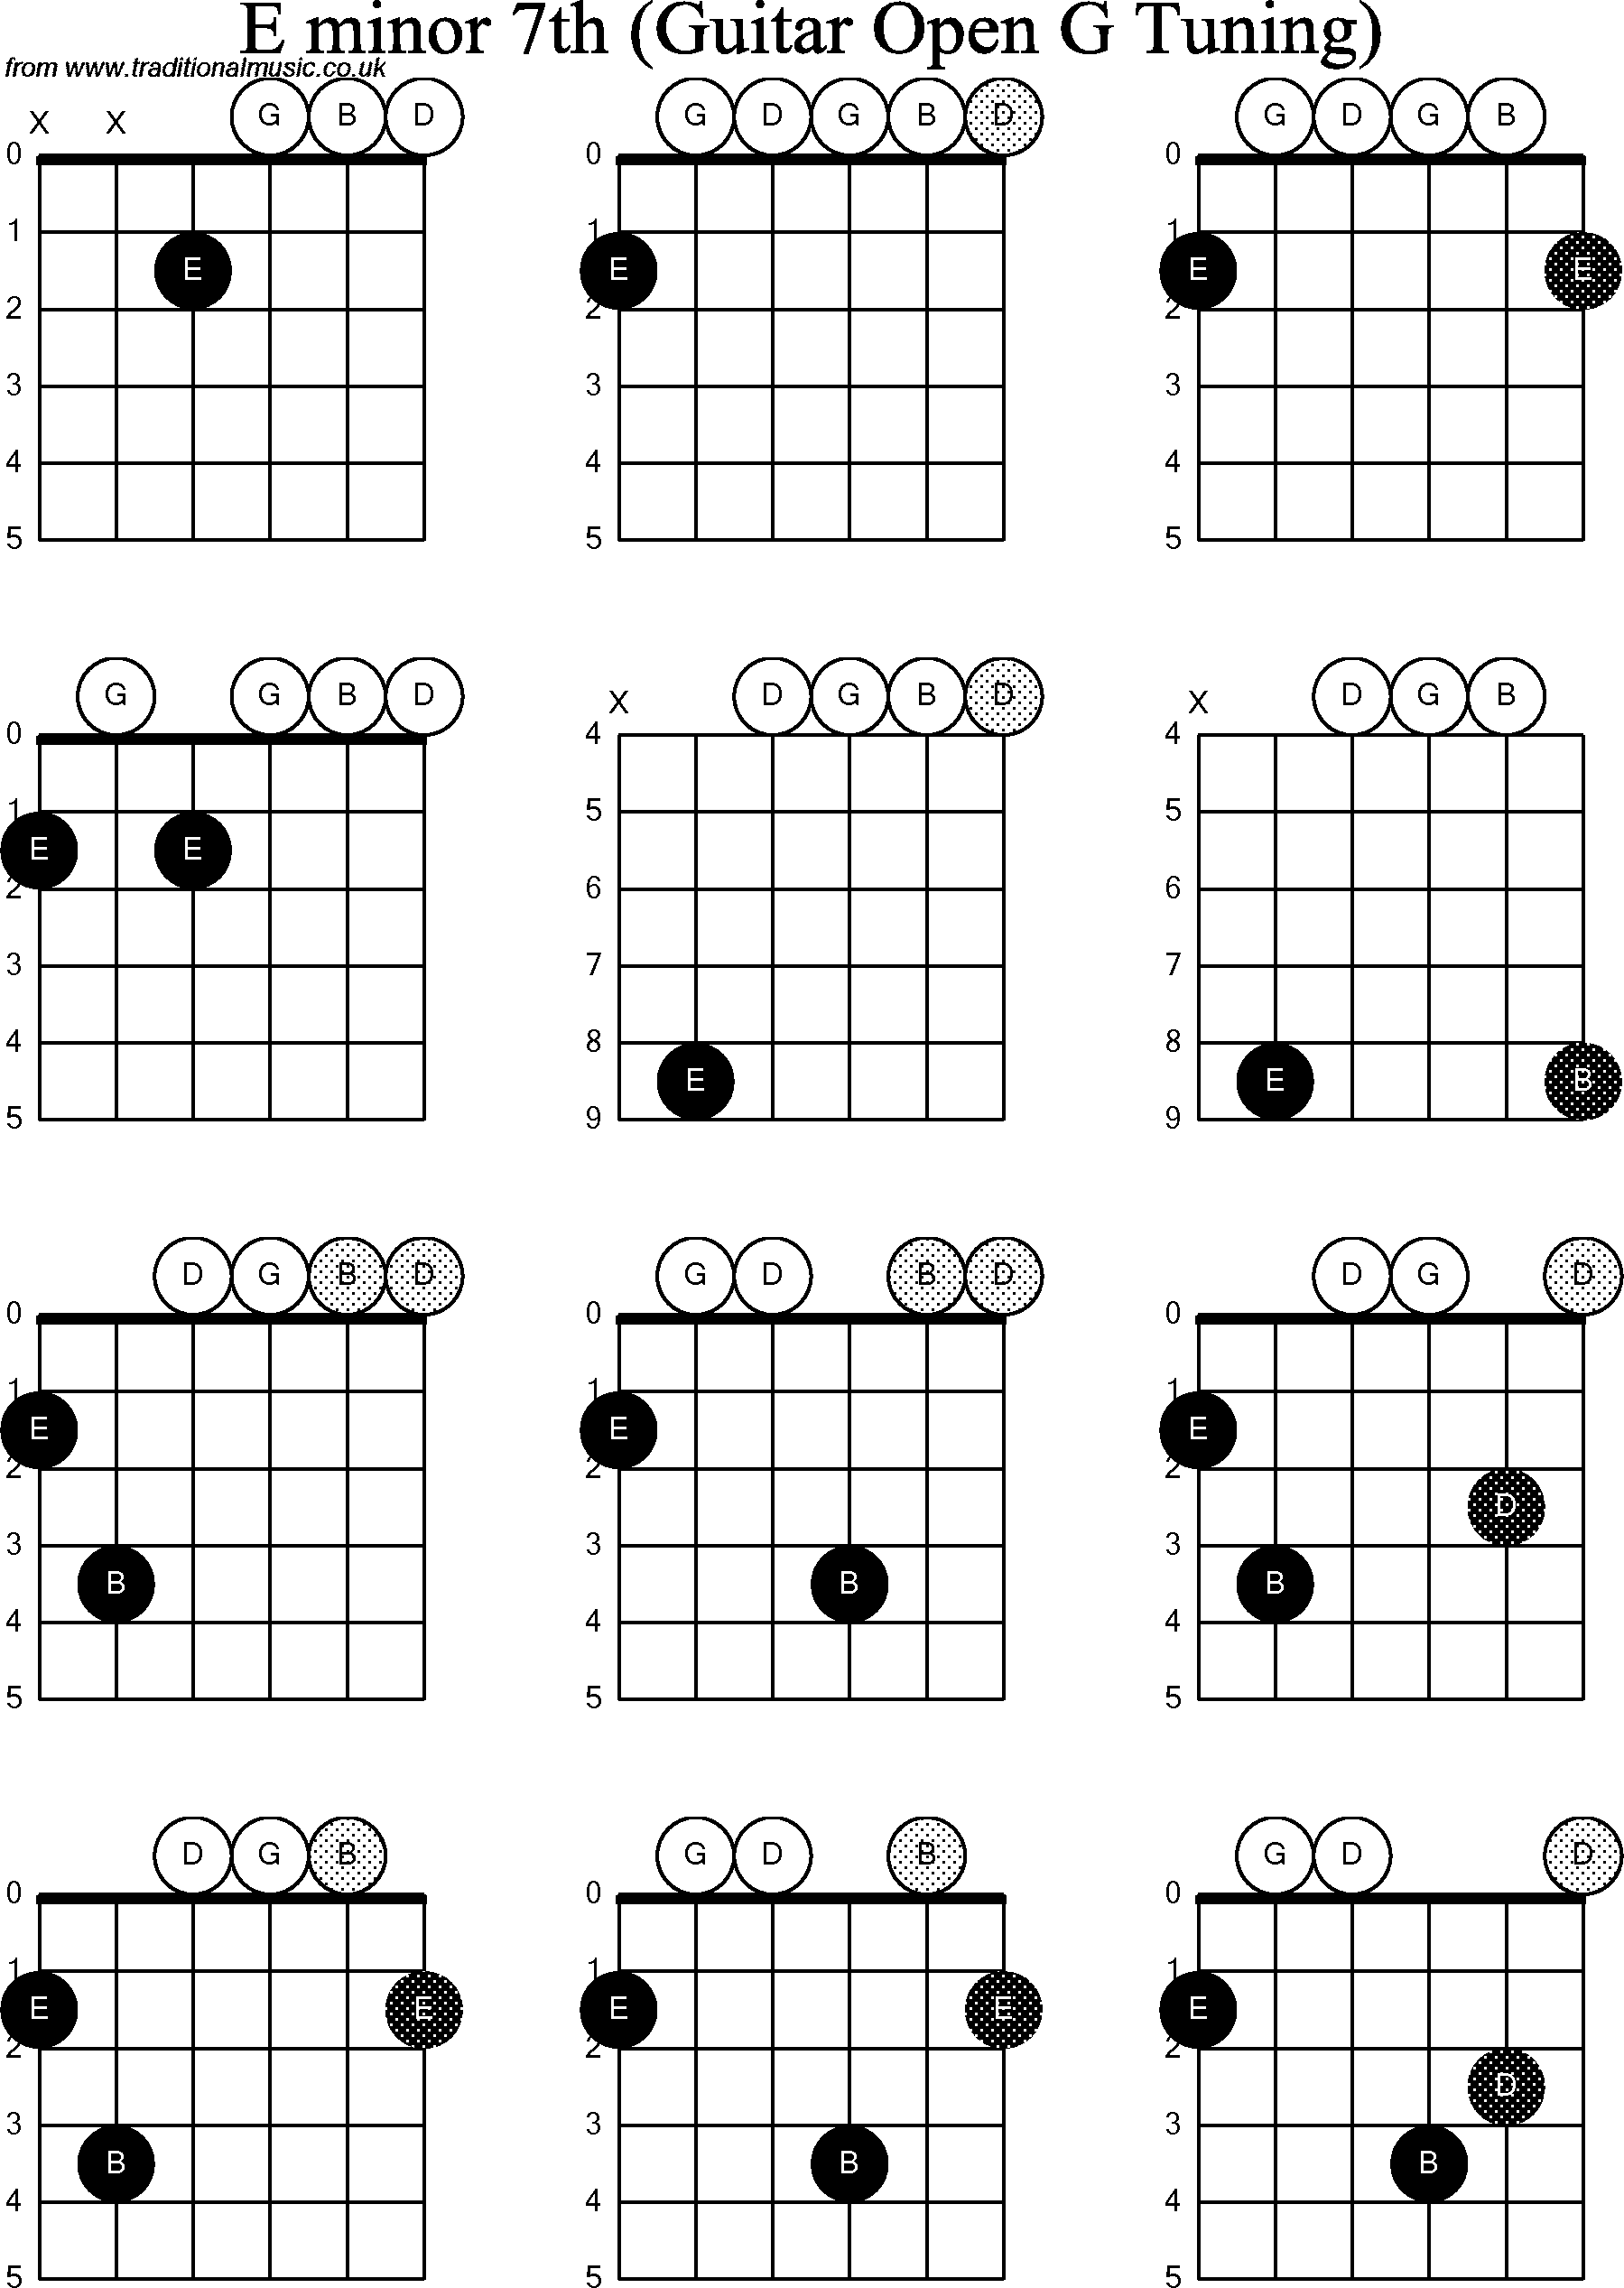 Chord diagrams for Dobro E Minor7th